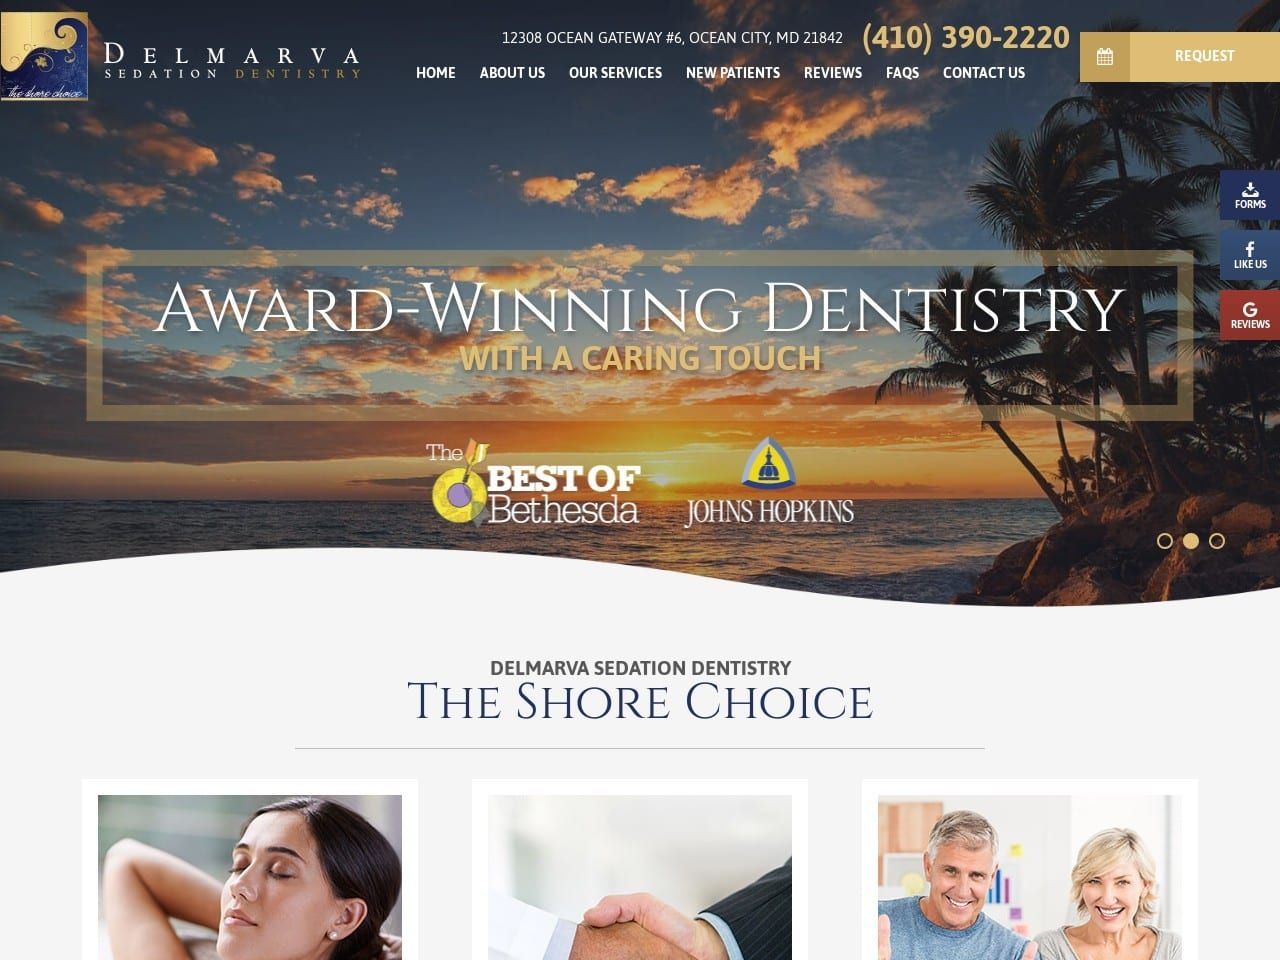 Delmarva Sedation Dentist Website Screenshot from delmarvasedationdentistry.com